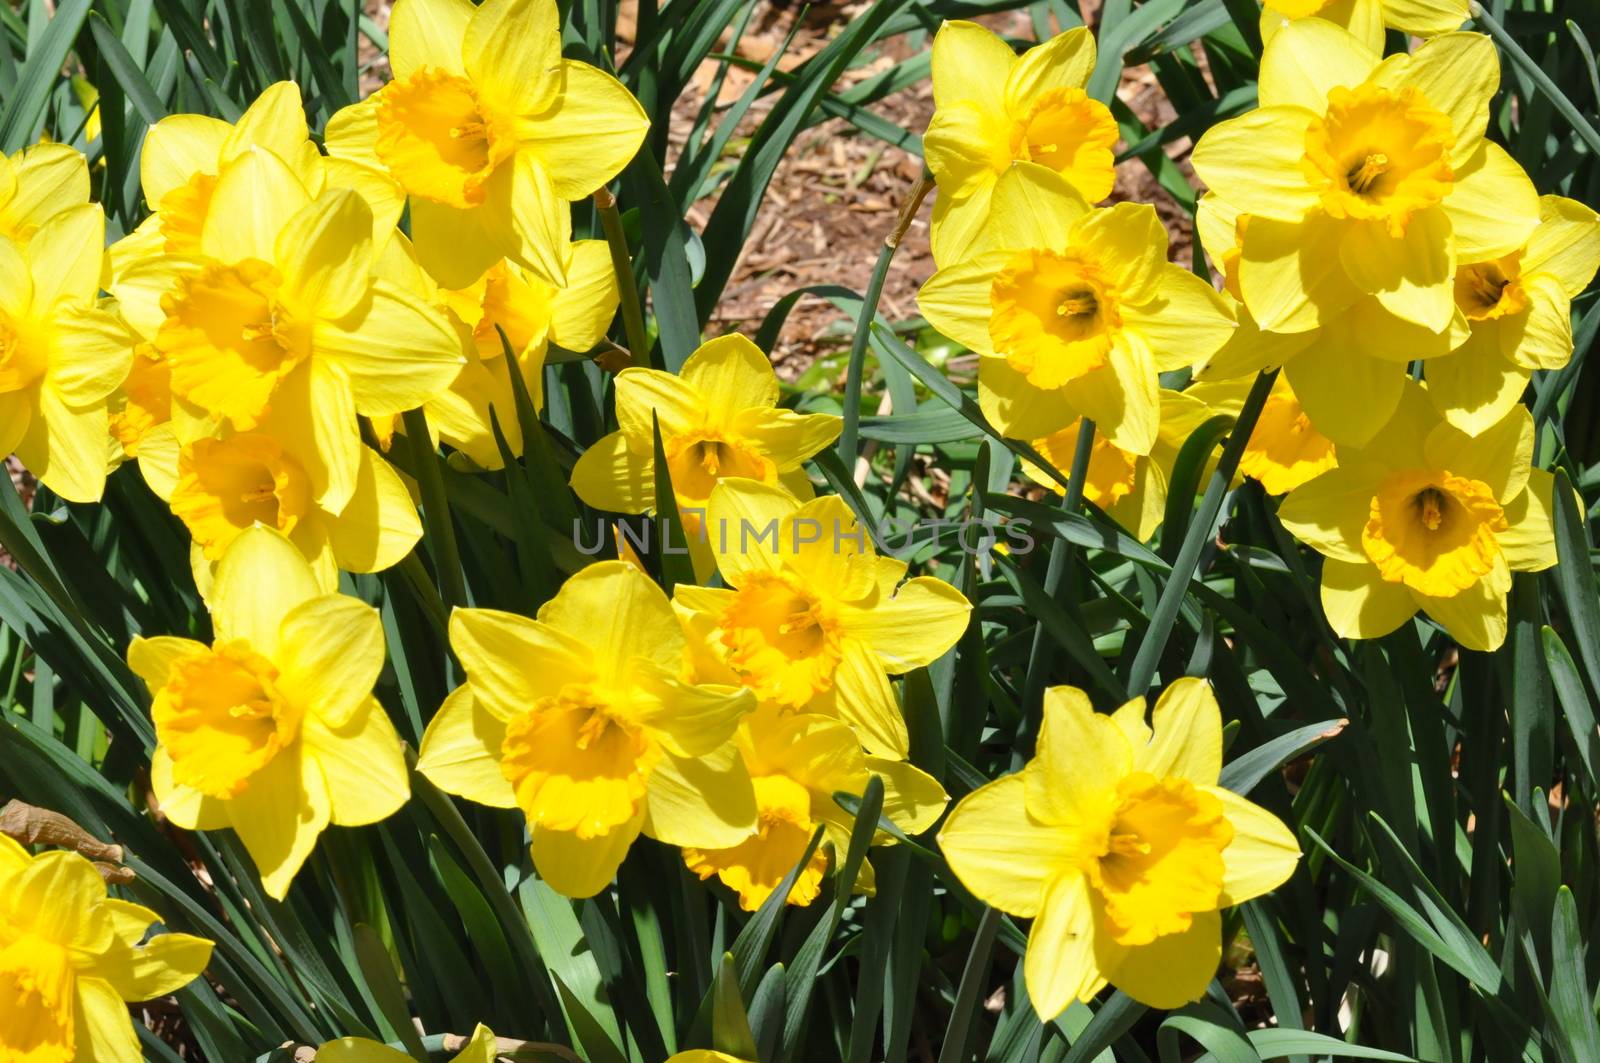 Daffodils by sainaniritu